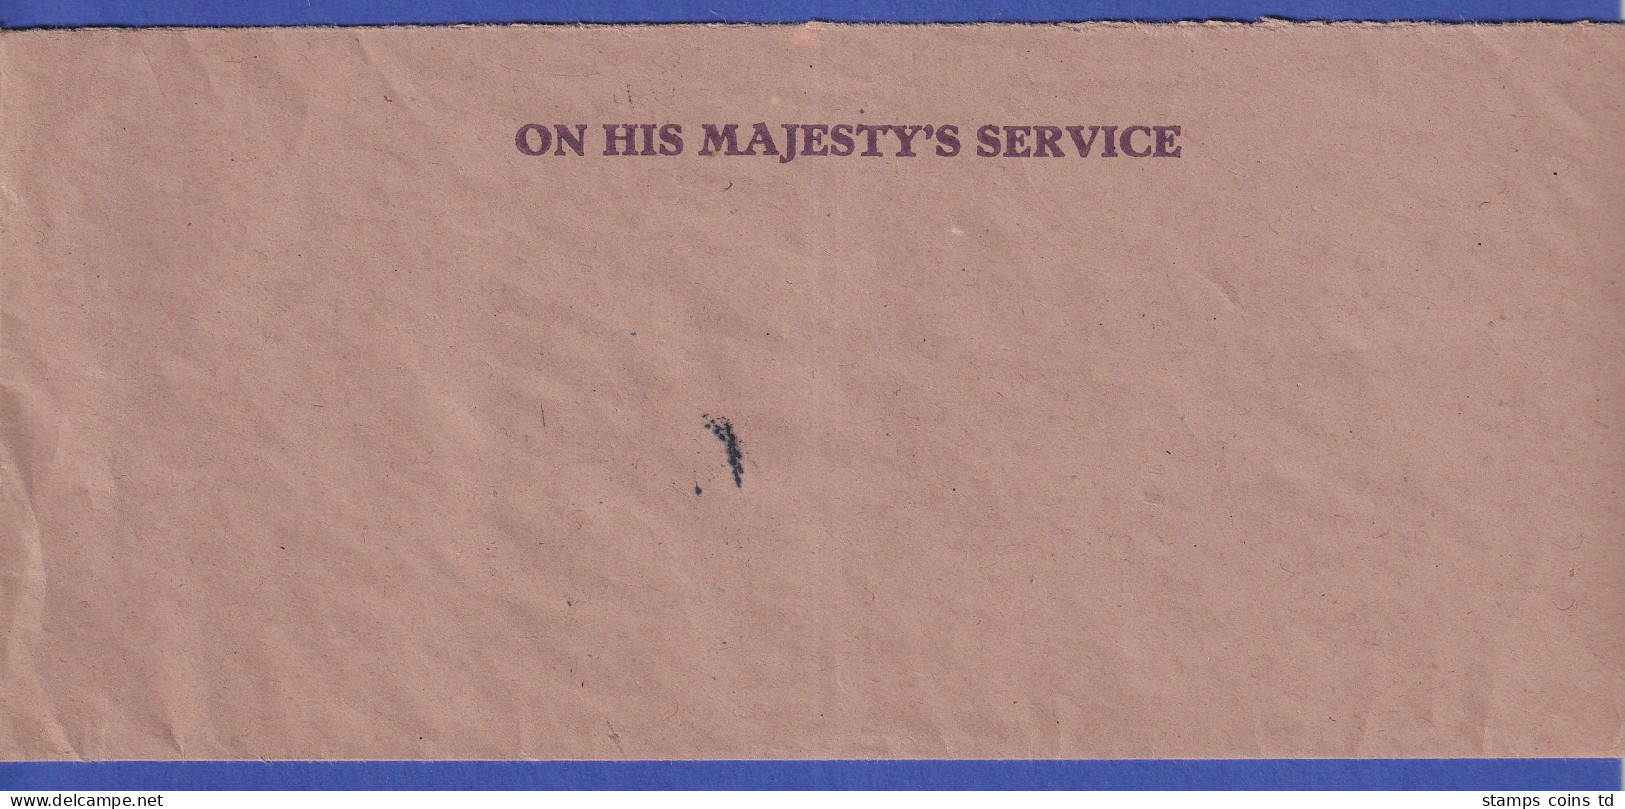 Britische Behördenkorrespondenz ON HIS / HER MAJESTY'S SERVICE April 1952 - Sonstige - Europa